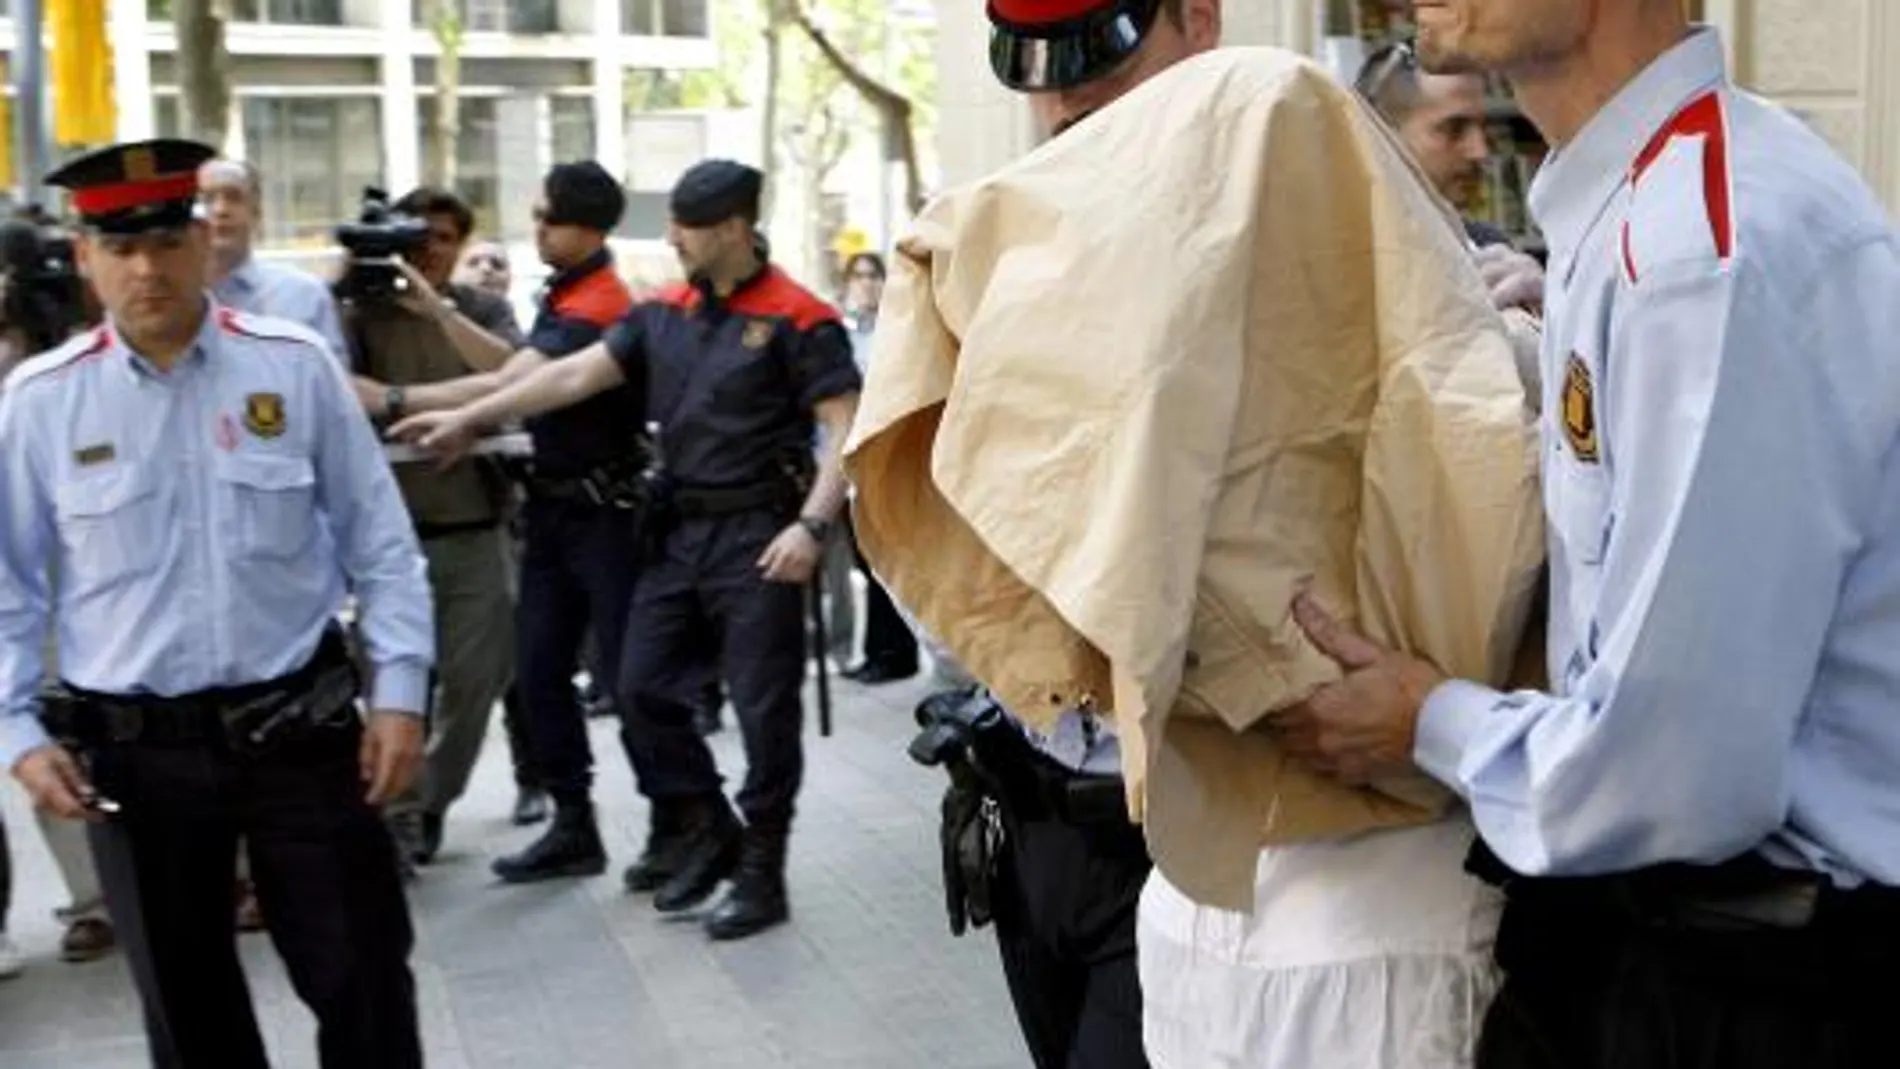 Lianne Ross Smith, con el rostro cubierto, es escoltada por dos mossos al salir del piso de Barcelona donde vivía con su pareja y los niños fallecidos